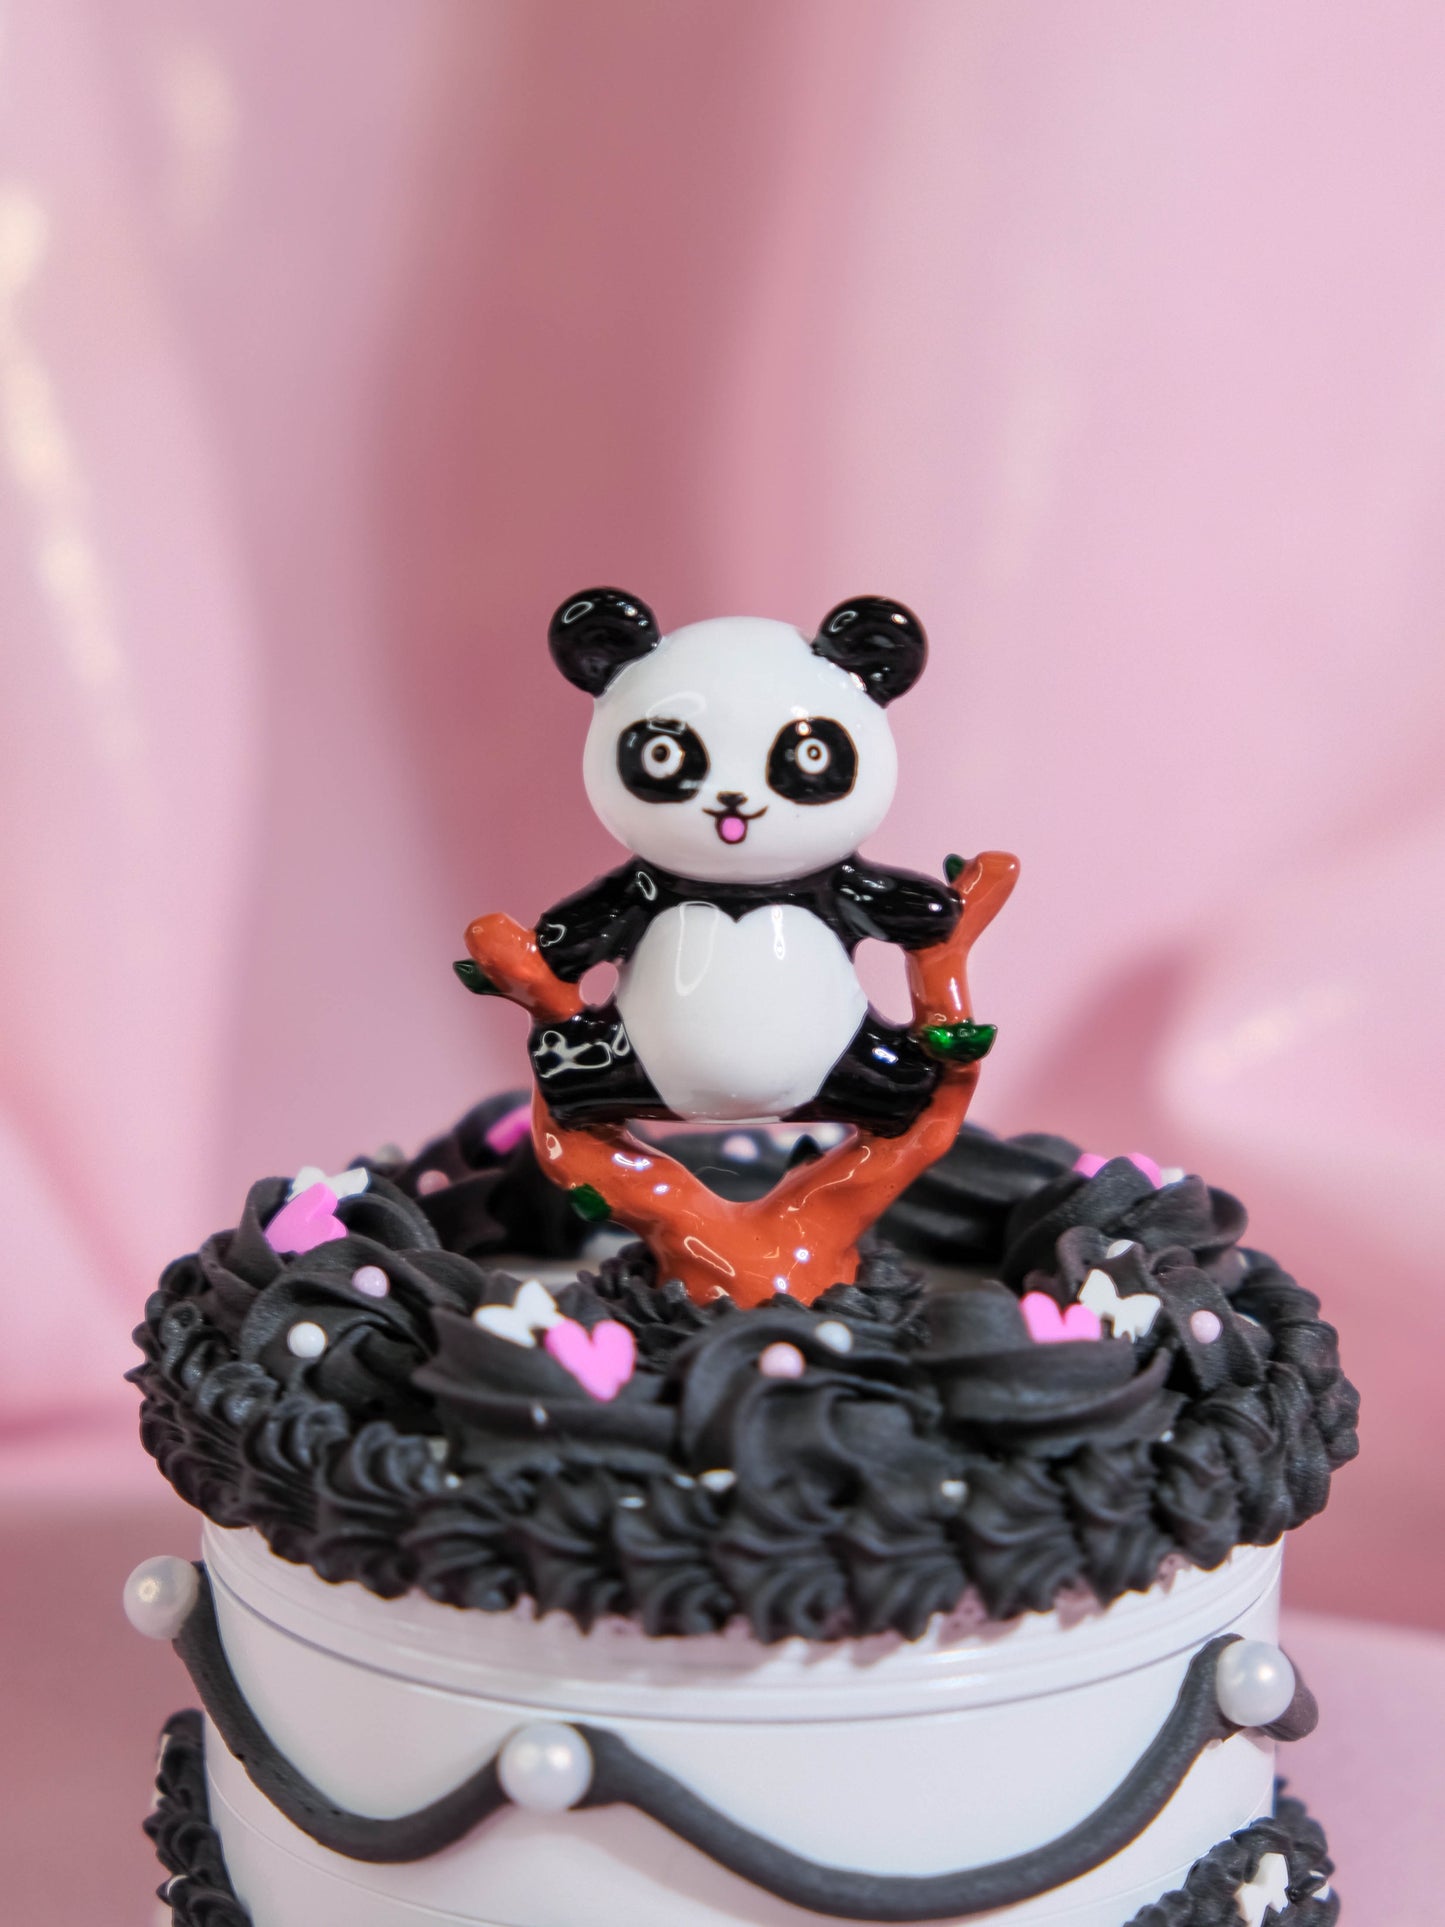 White Chocolate Panda Express Cake - Grinder